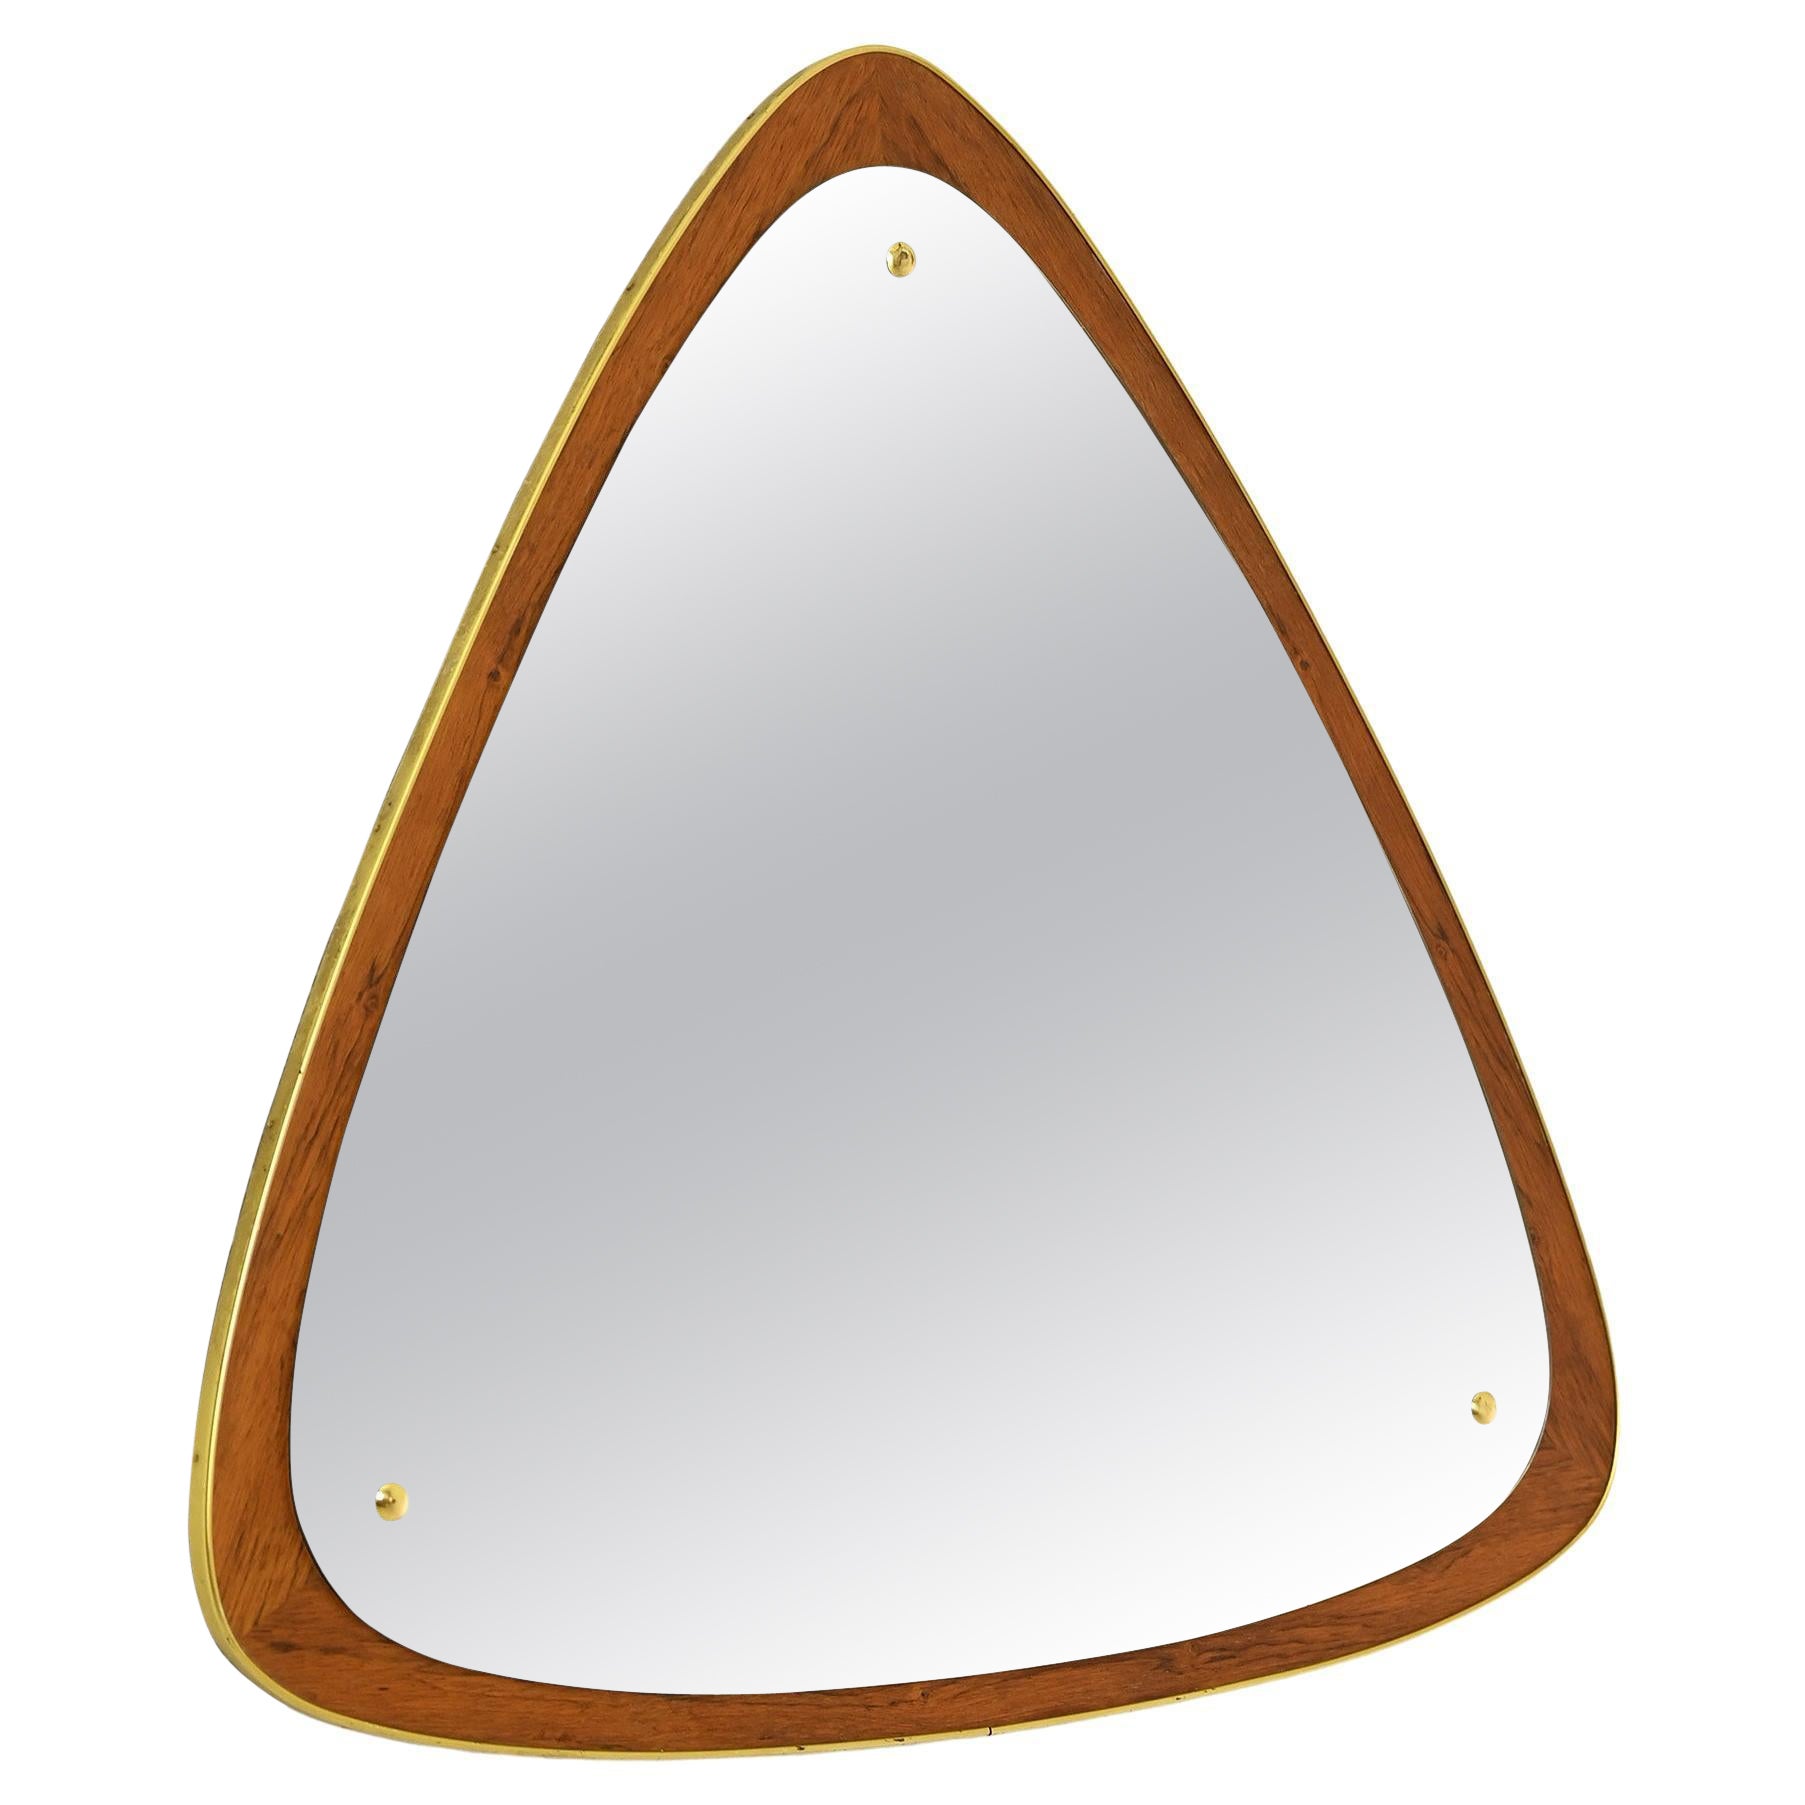 Vintage triangular mirror